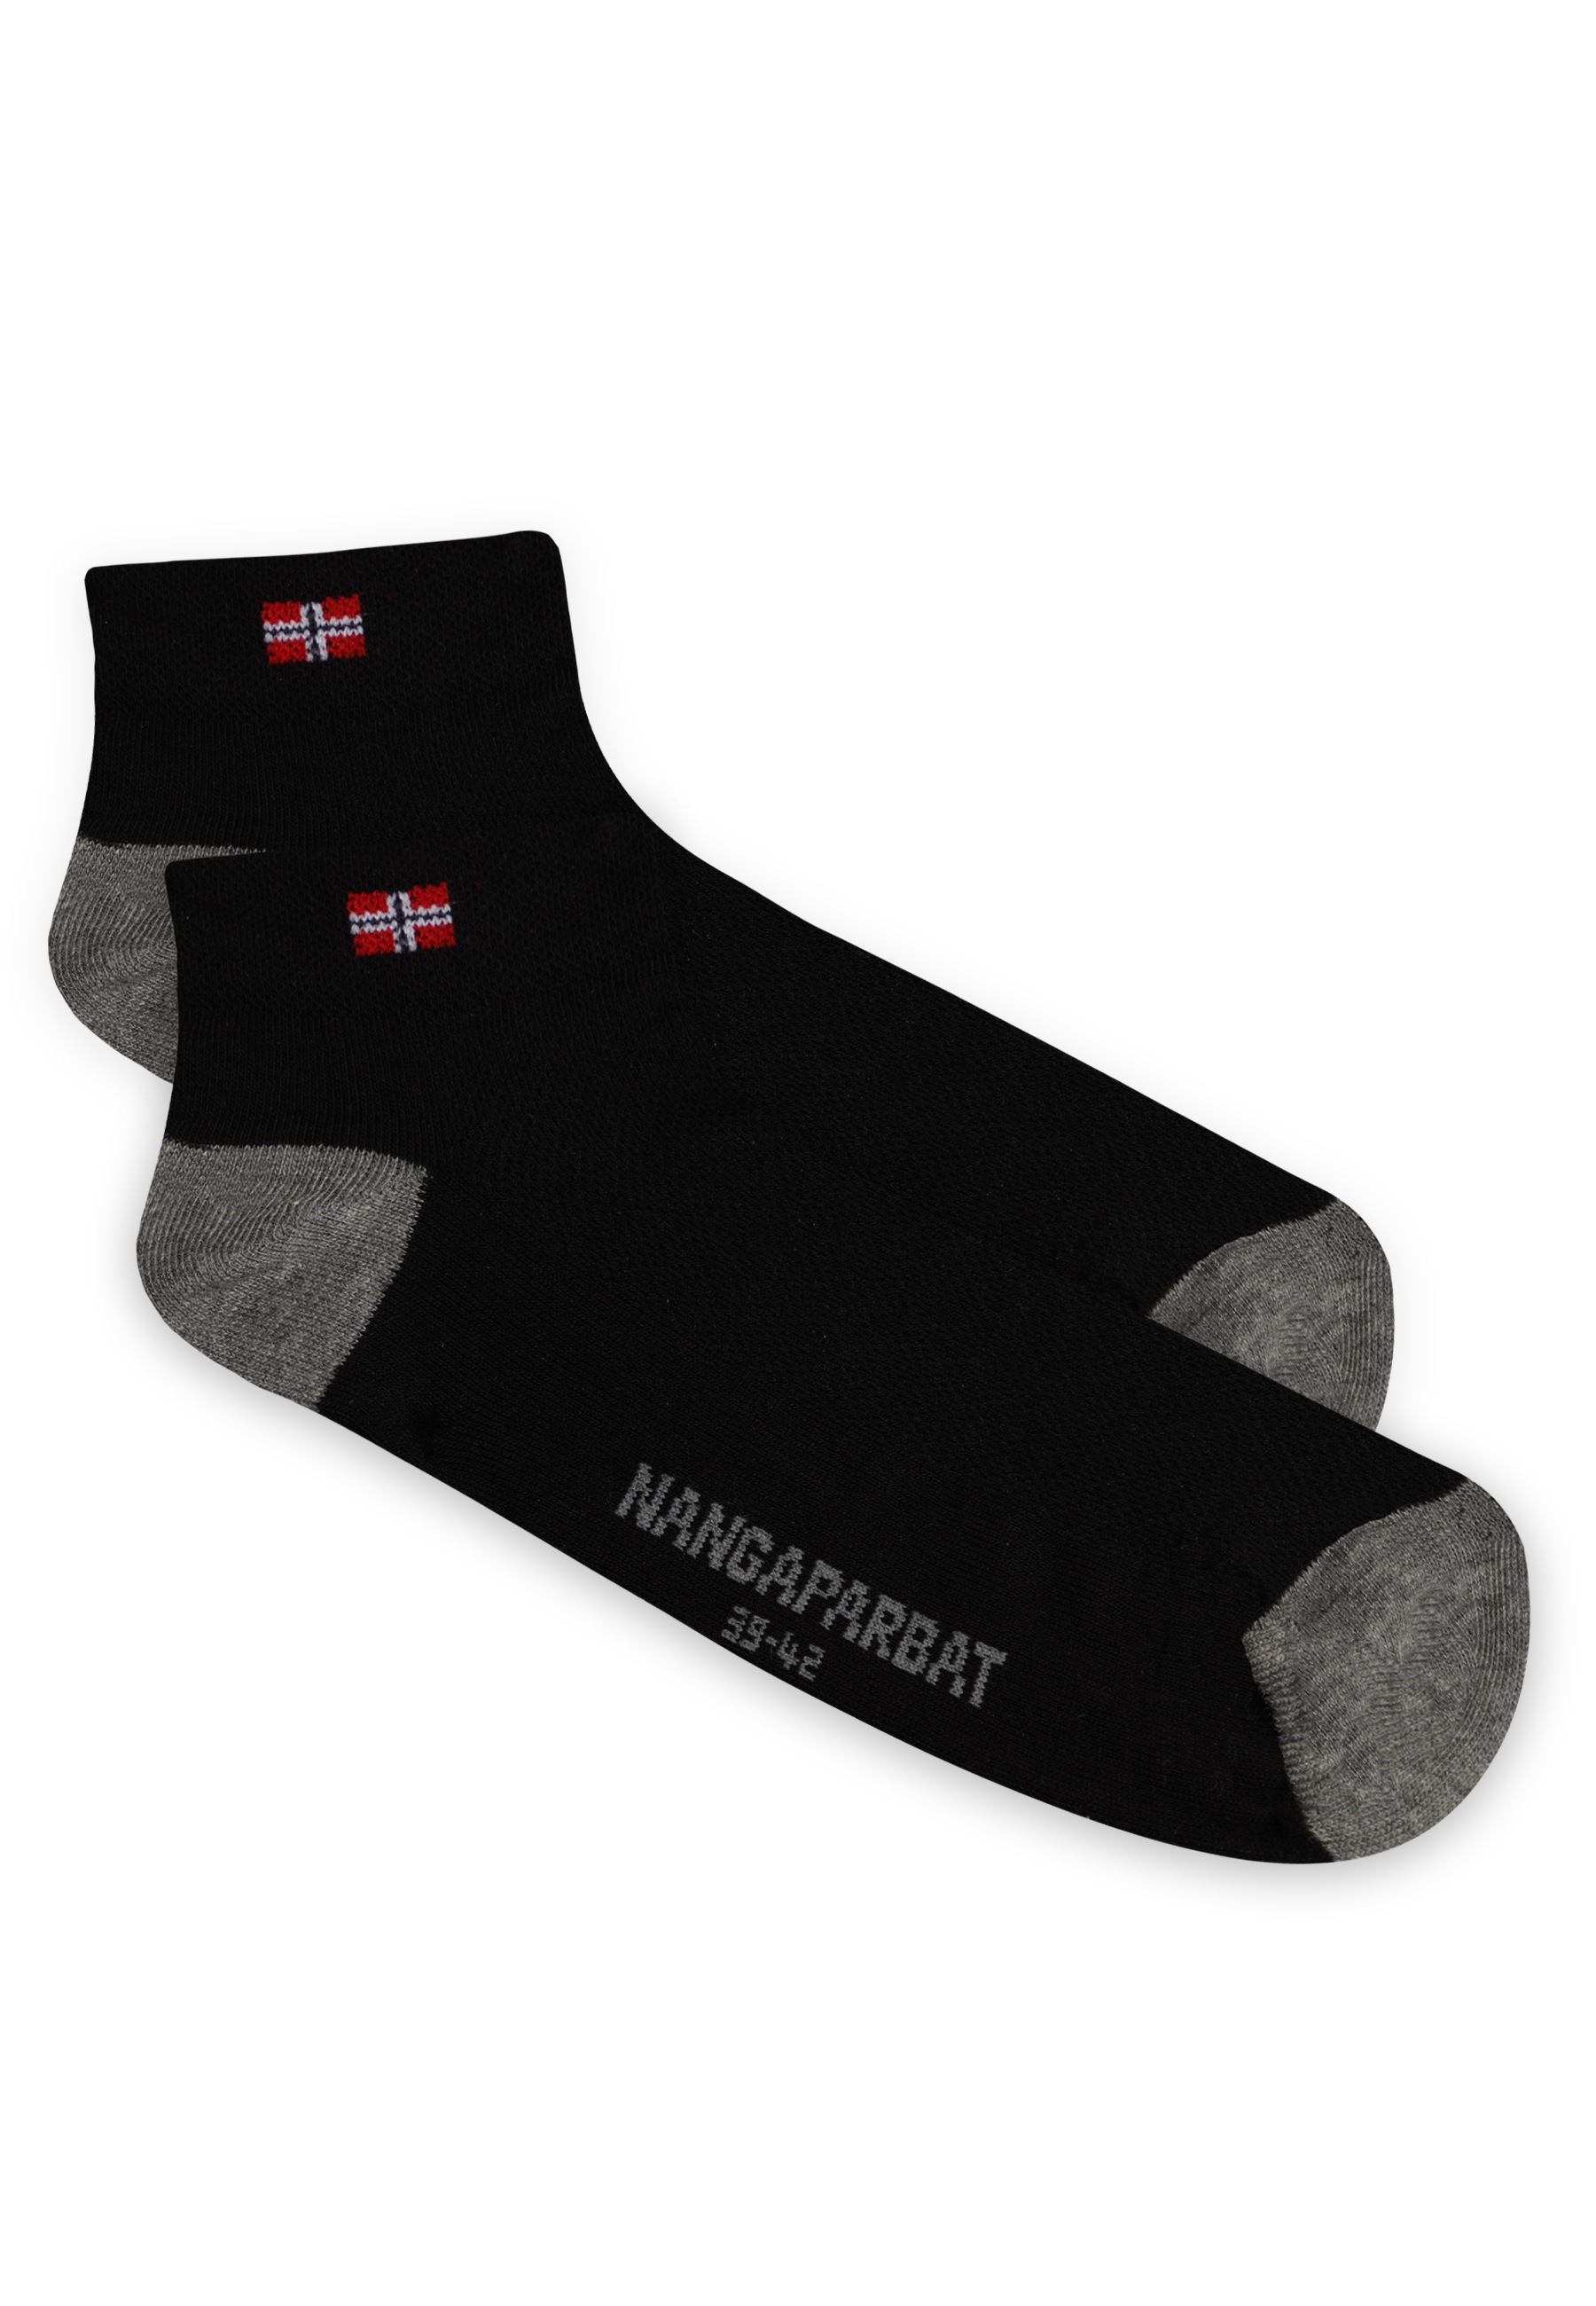 NANGAPARBAT Socken, mit komfortabler Trittdämpfung